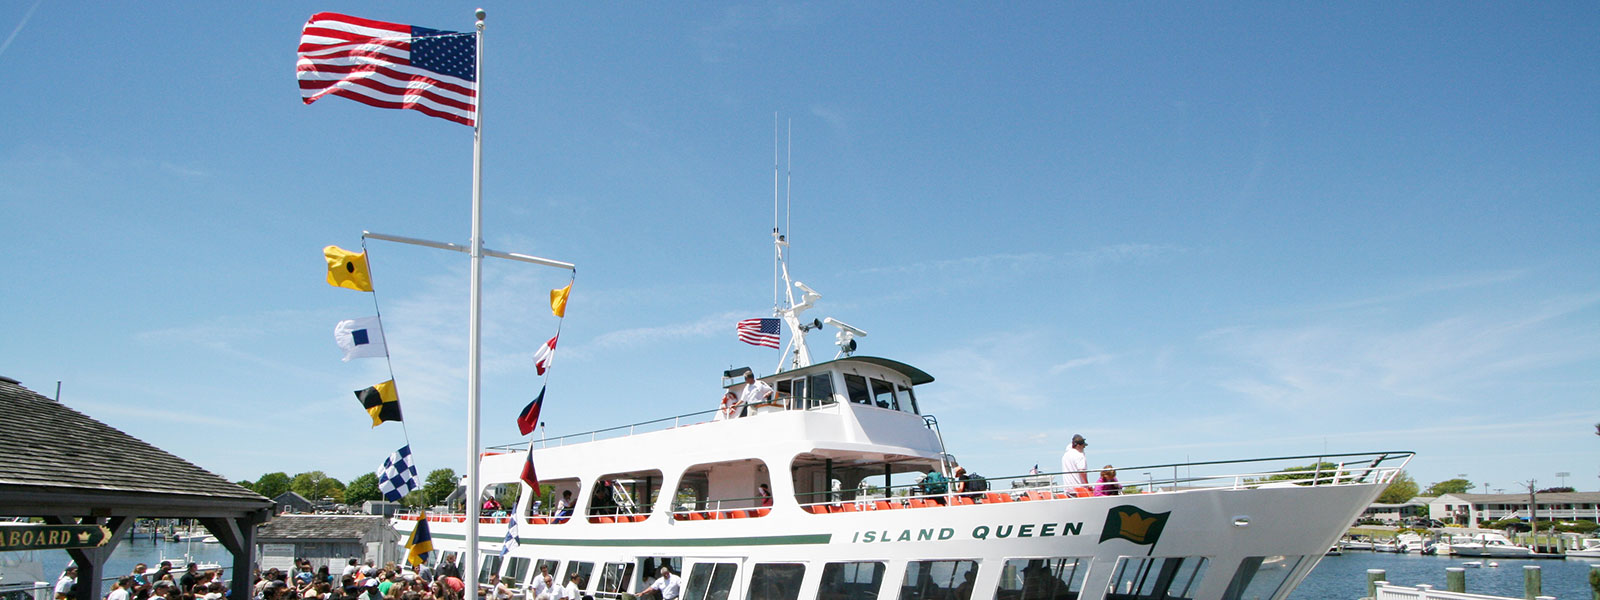 Island Queen loading passengers